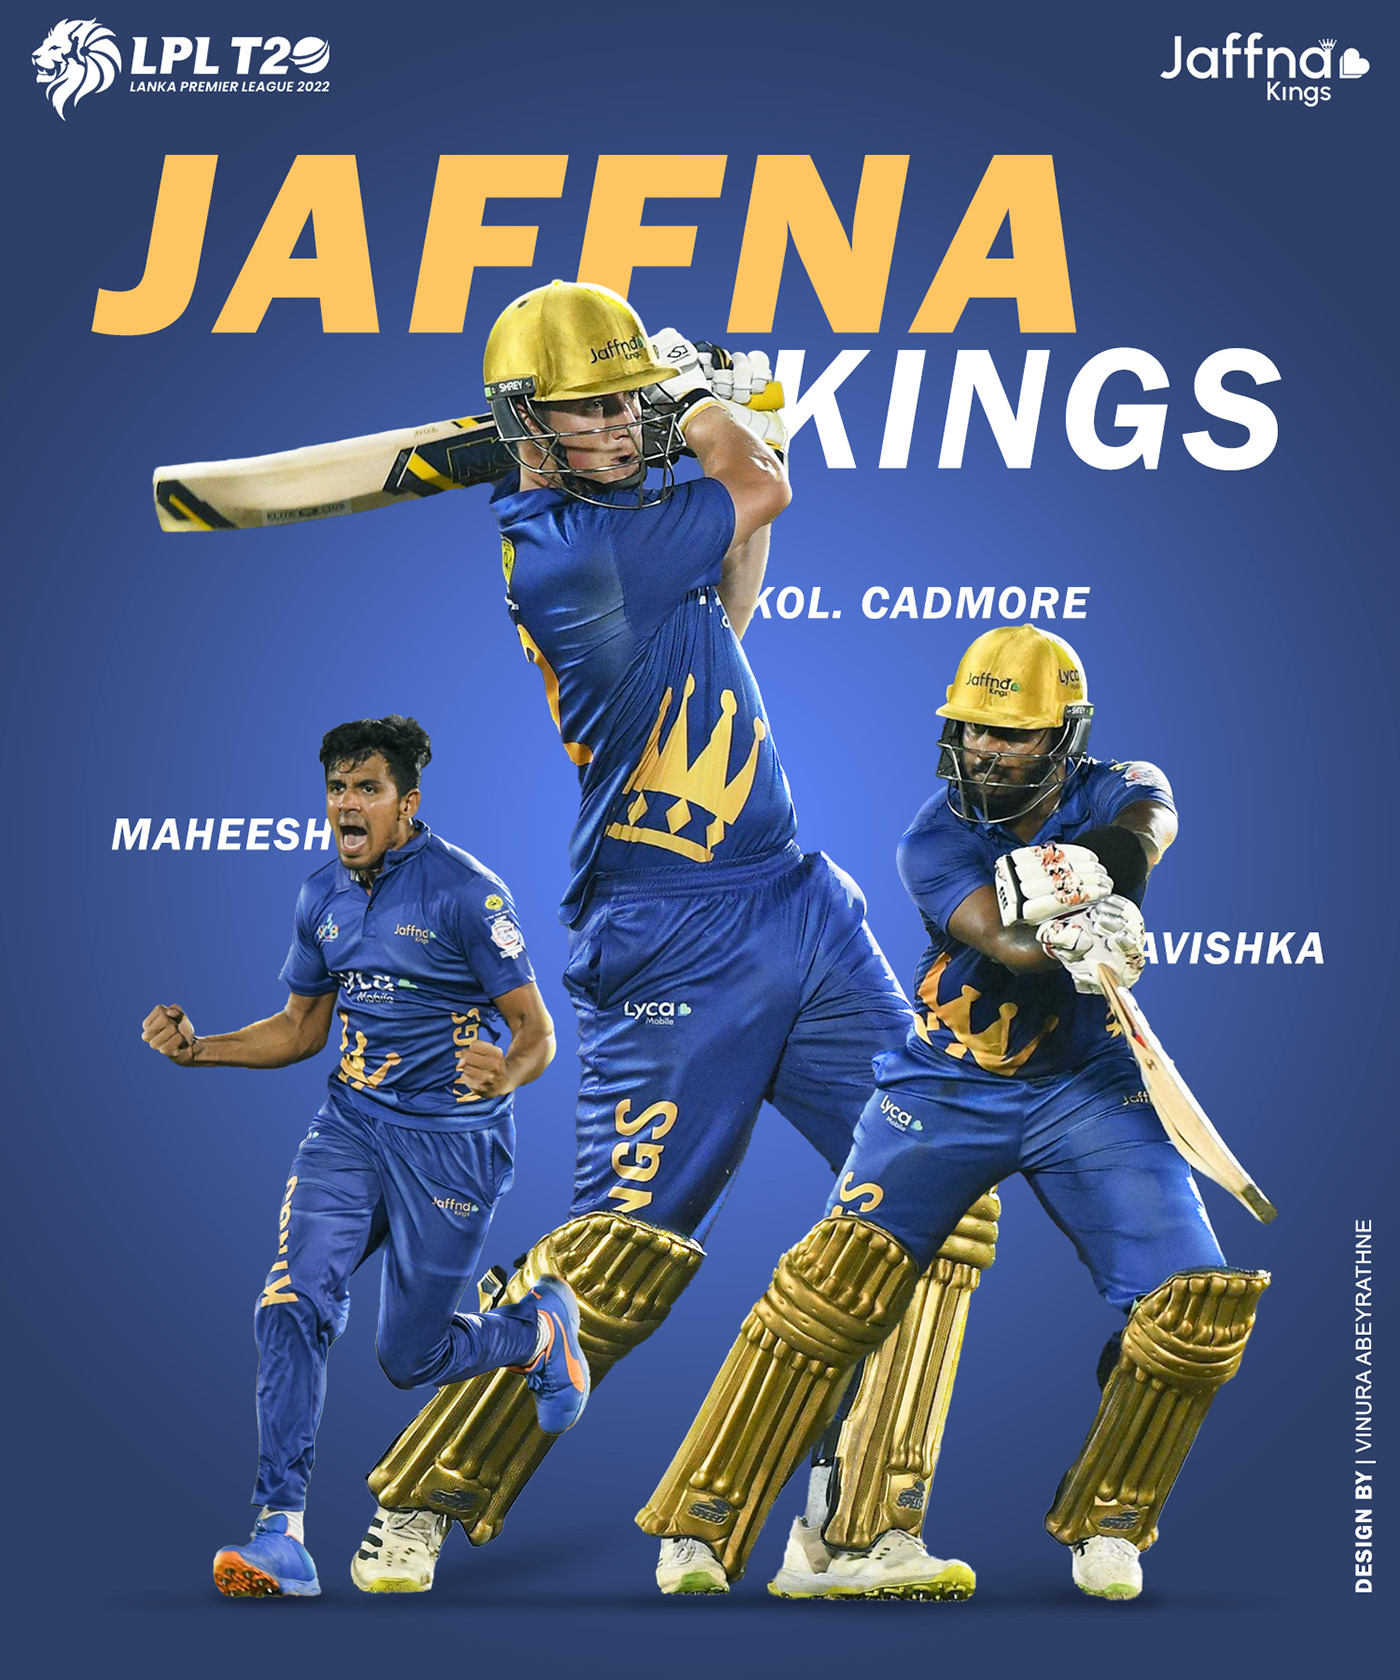 Cricket jaffna kings lpl Poster Design SLC srilanka